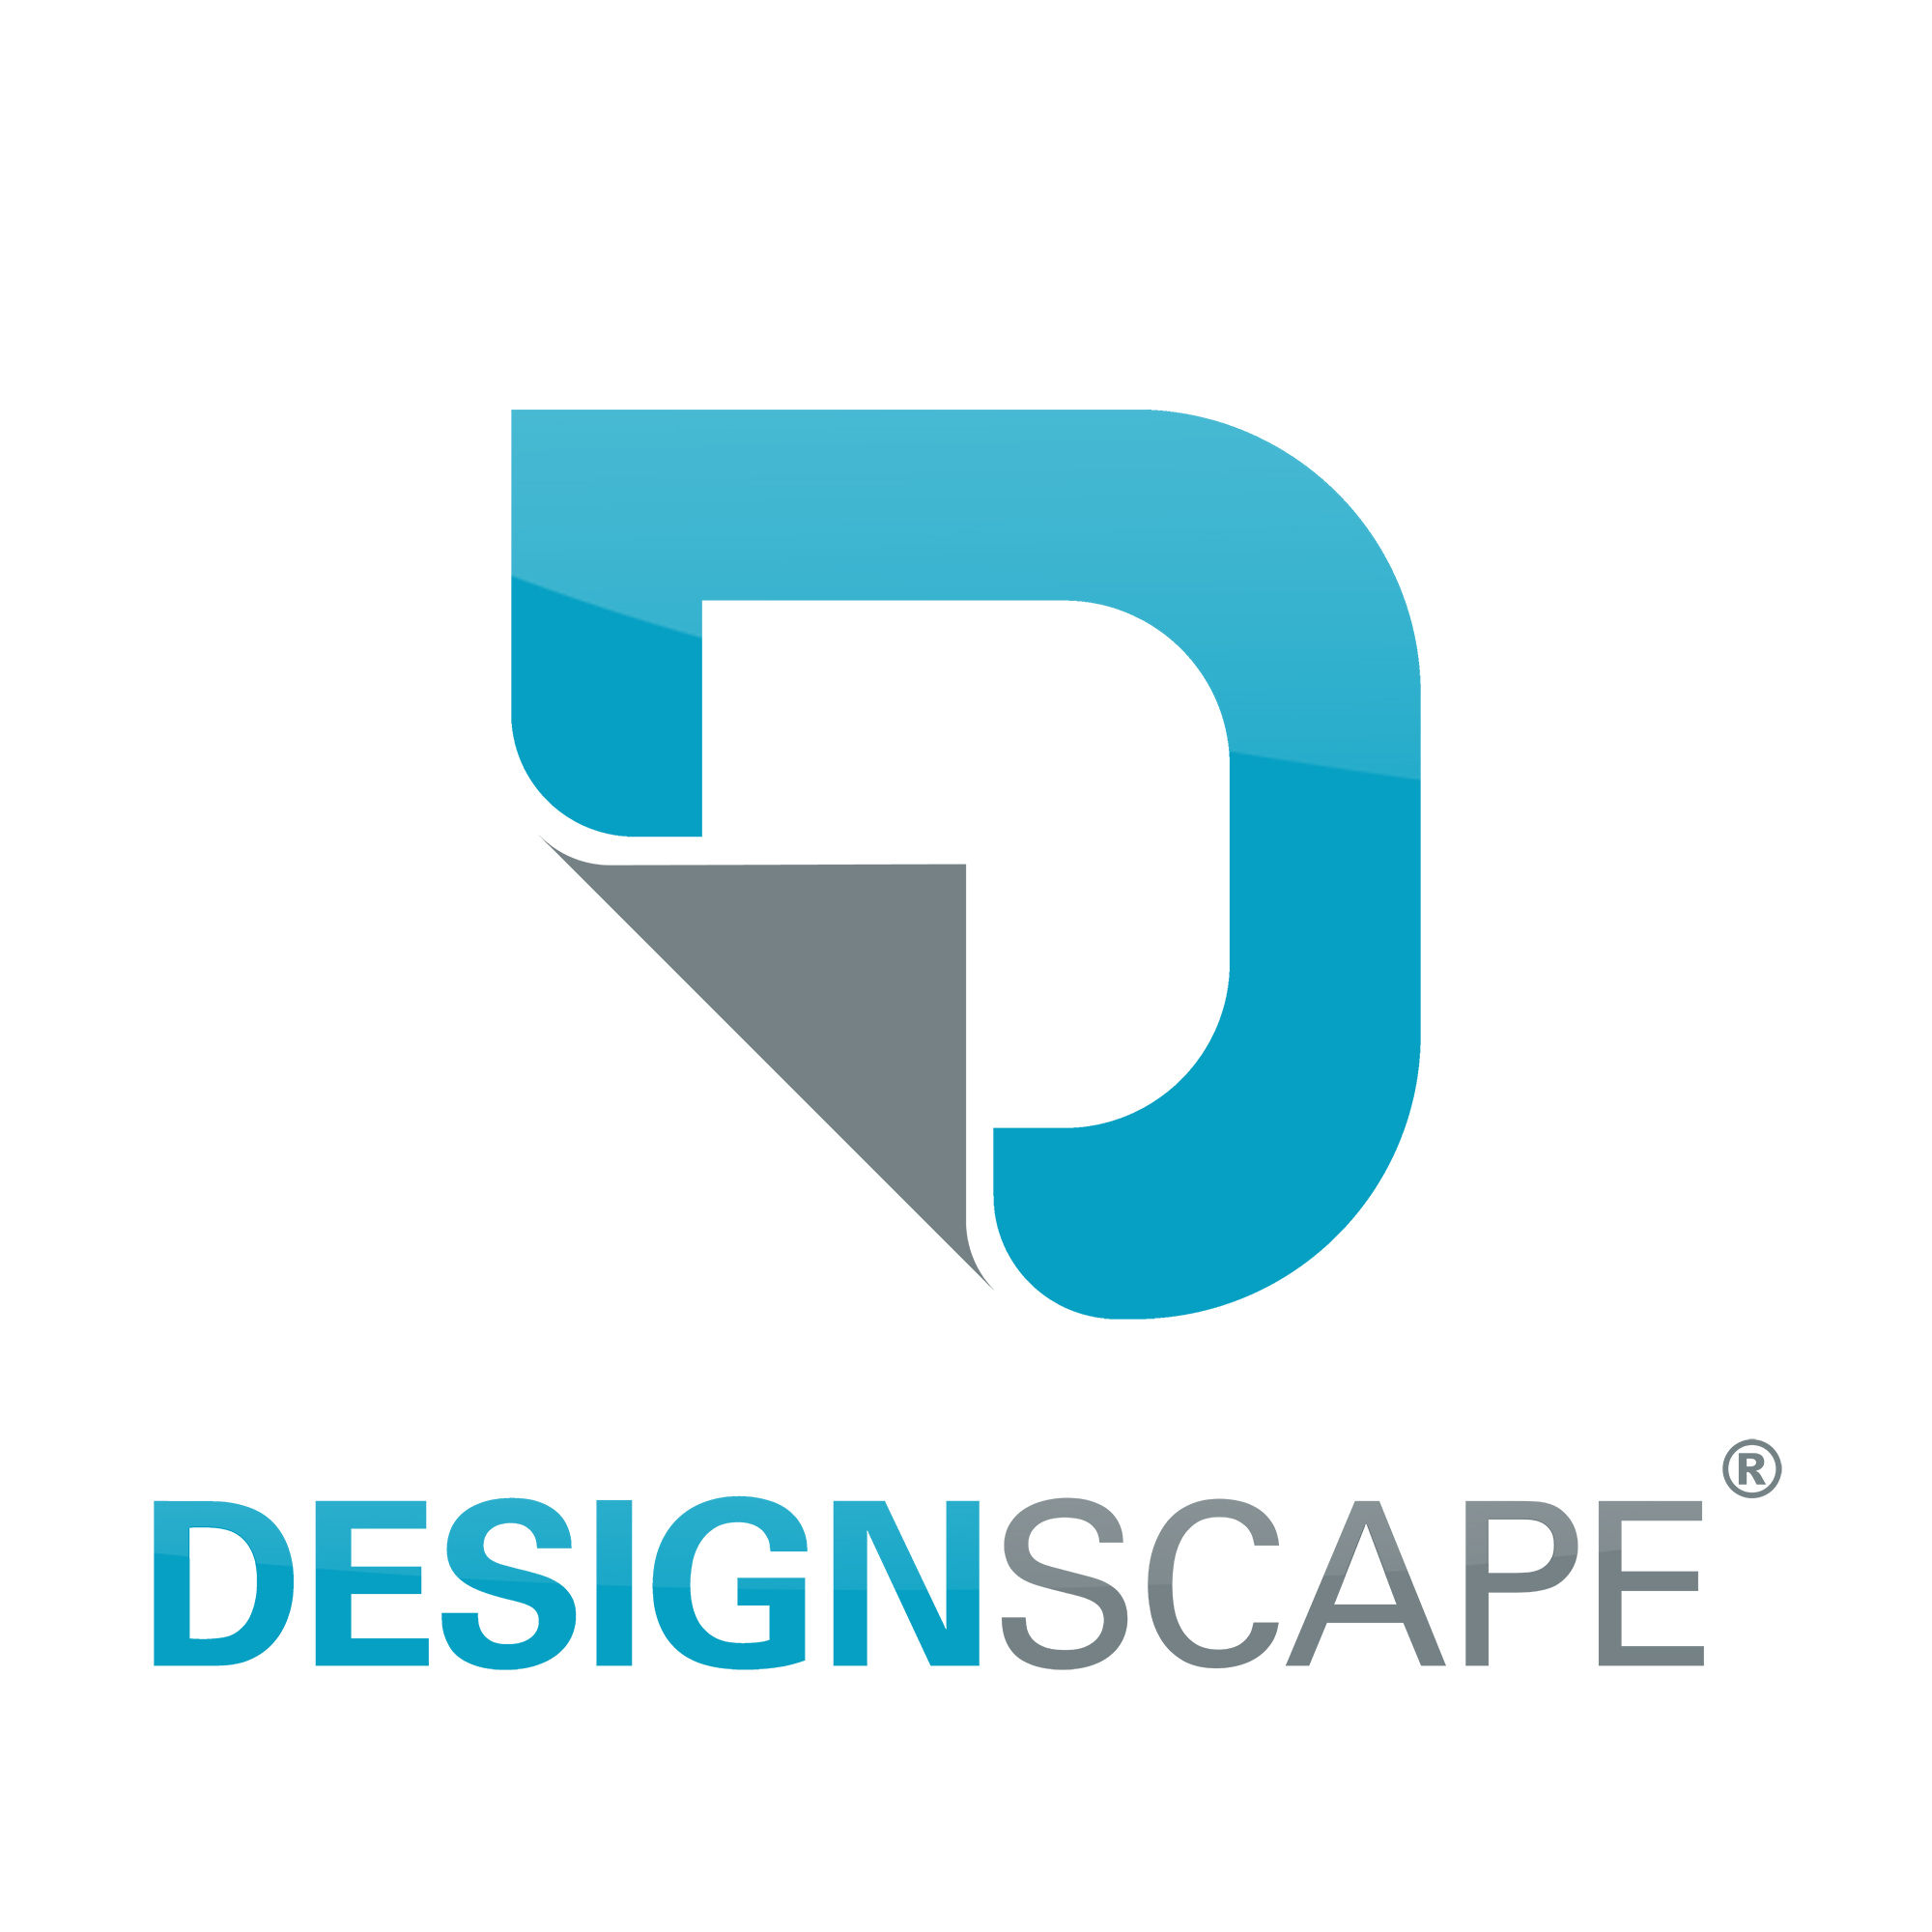 Designscape Creative GmbH